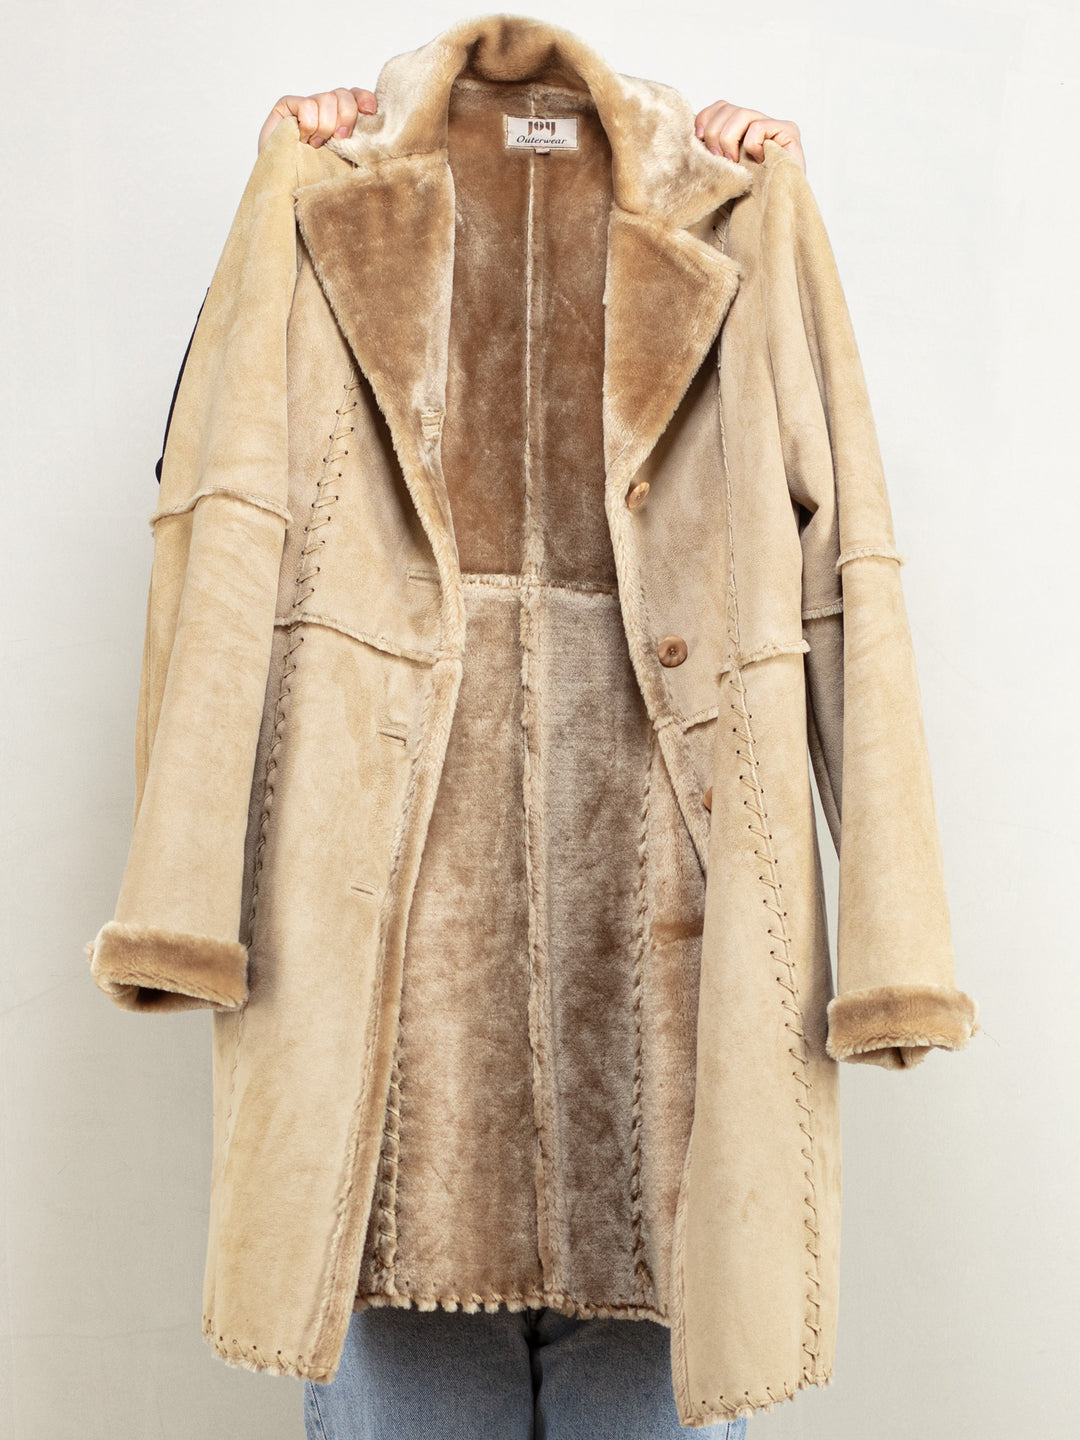 Faux Suede Coat vintage 90's faux shearling sherpa button up coat boho hippie overcoat y2k style faux sheepskin coat western size medium